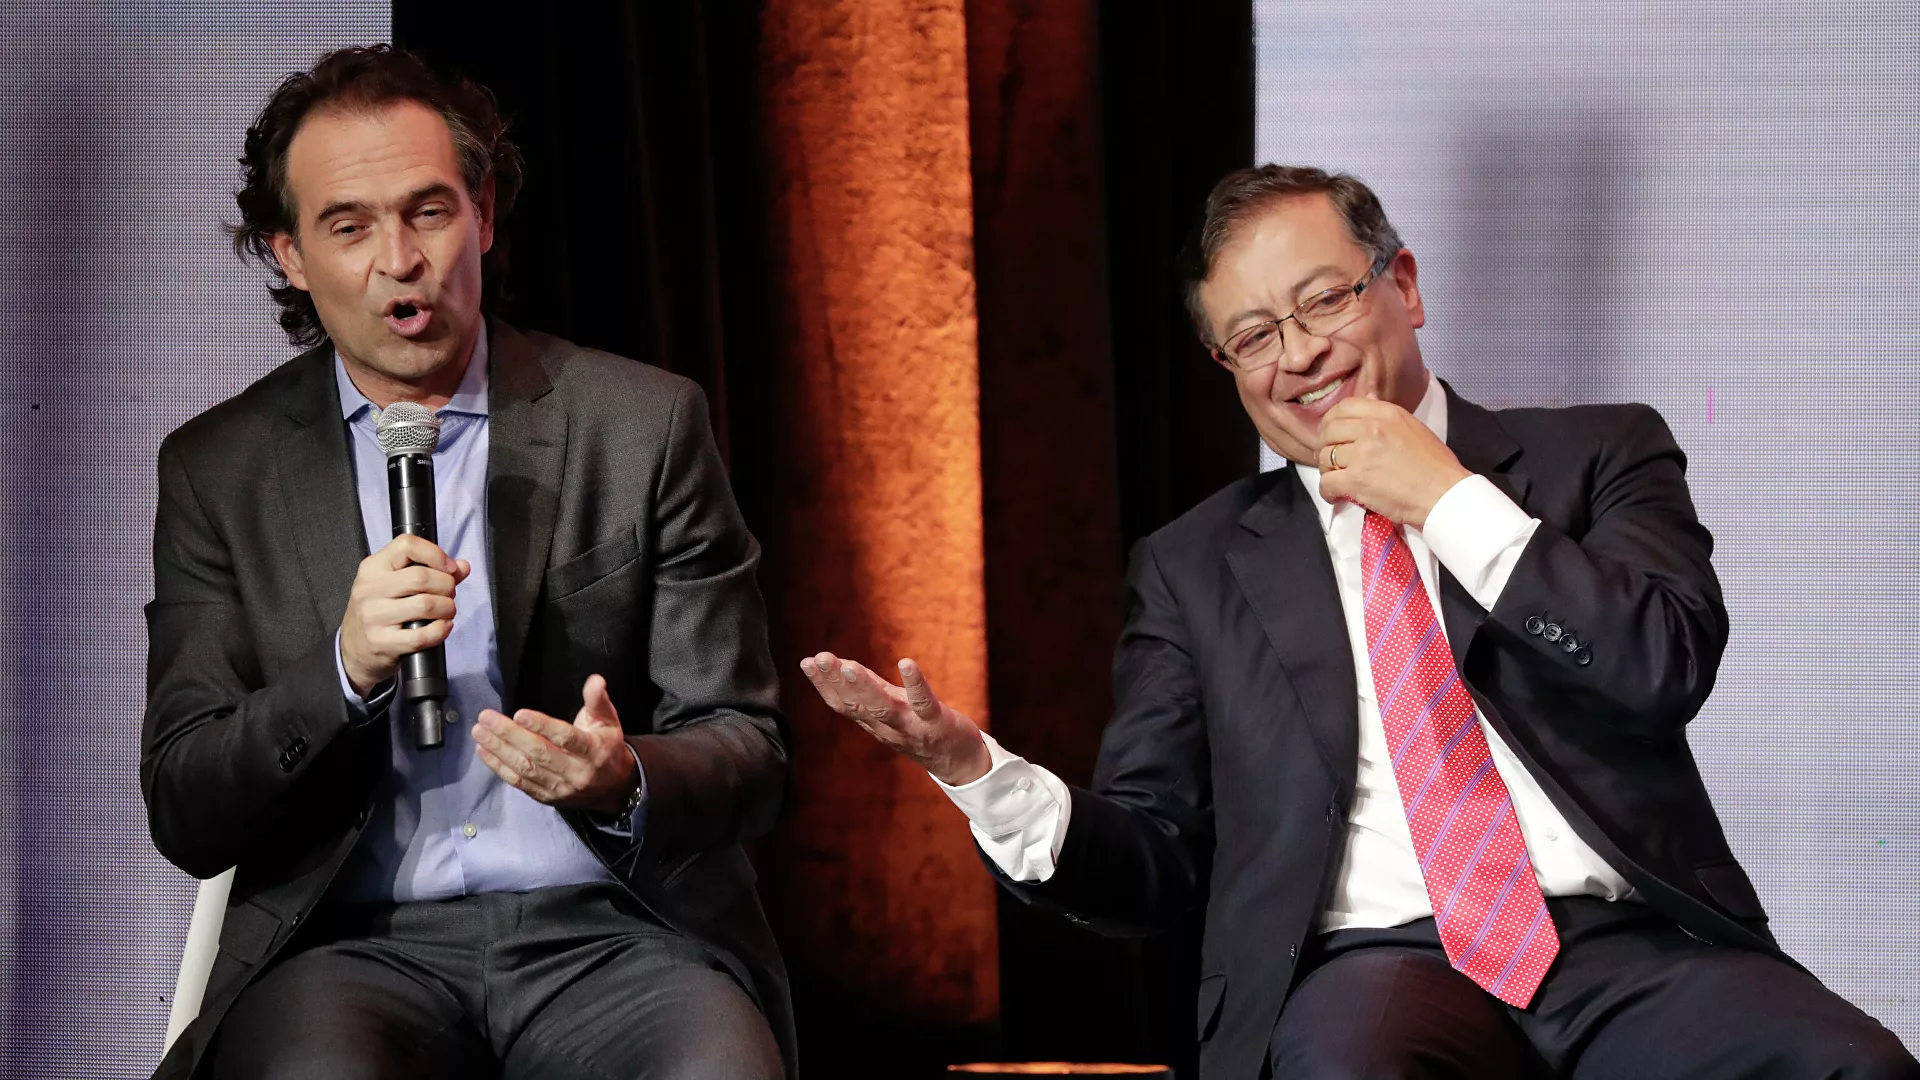  Petro y Gutiérrez, confirmados candidatos presidenciales de izquierda y derecha en Colombia